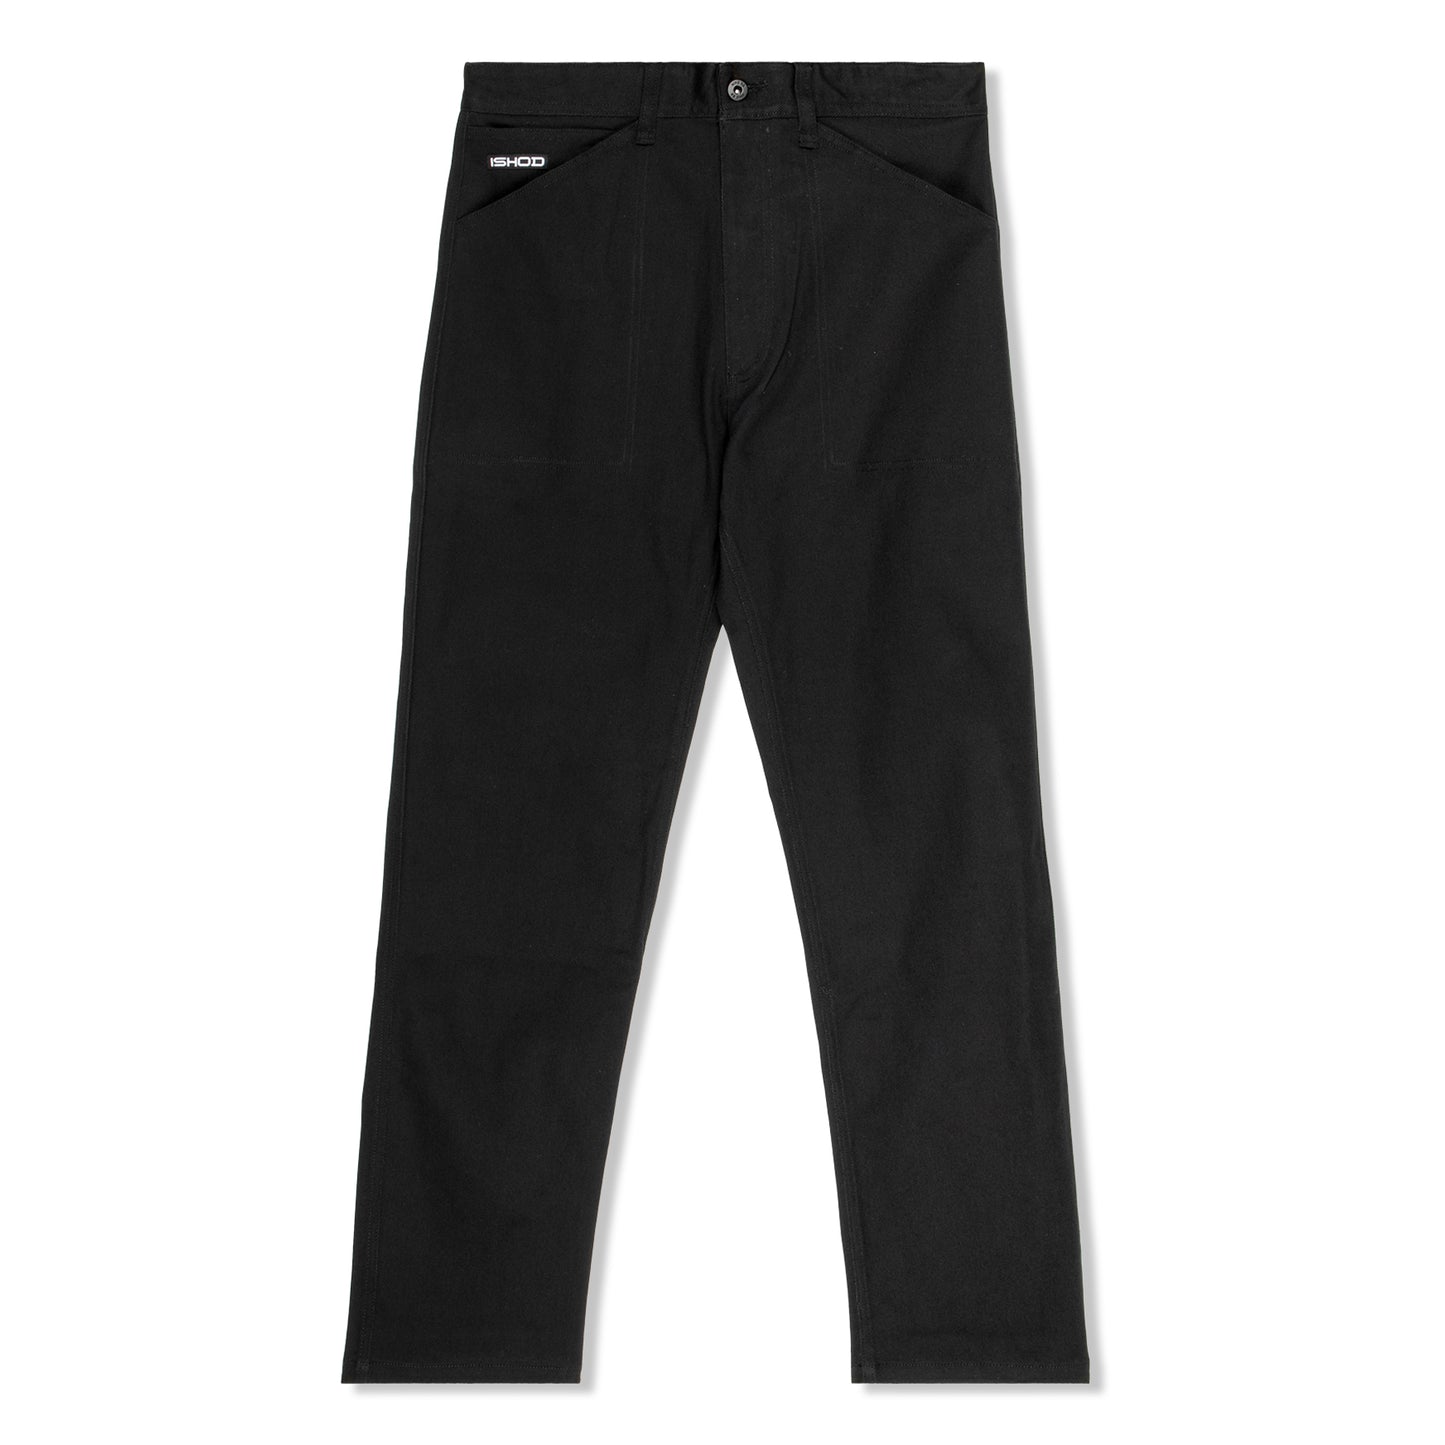 Nike SB Ishod Wair Skate Pants (Black)